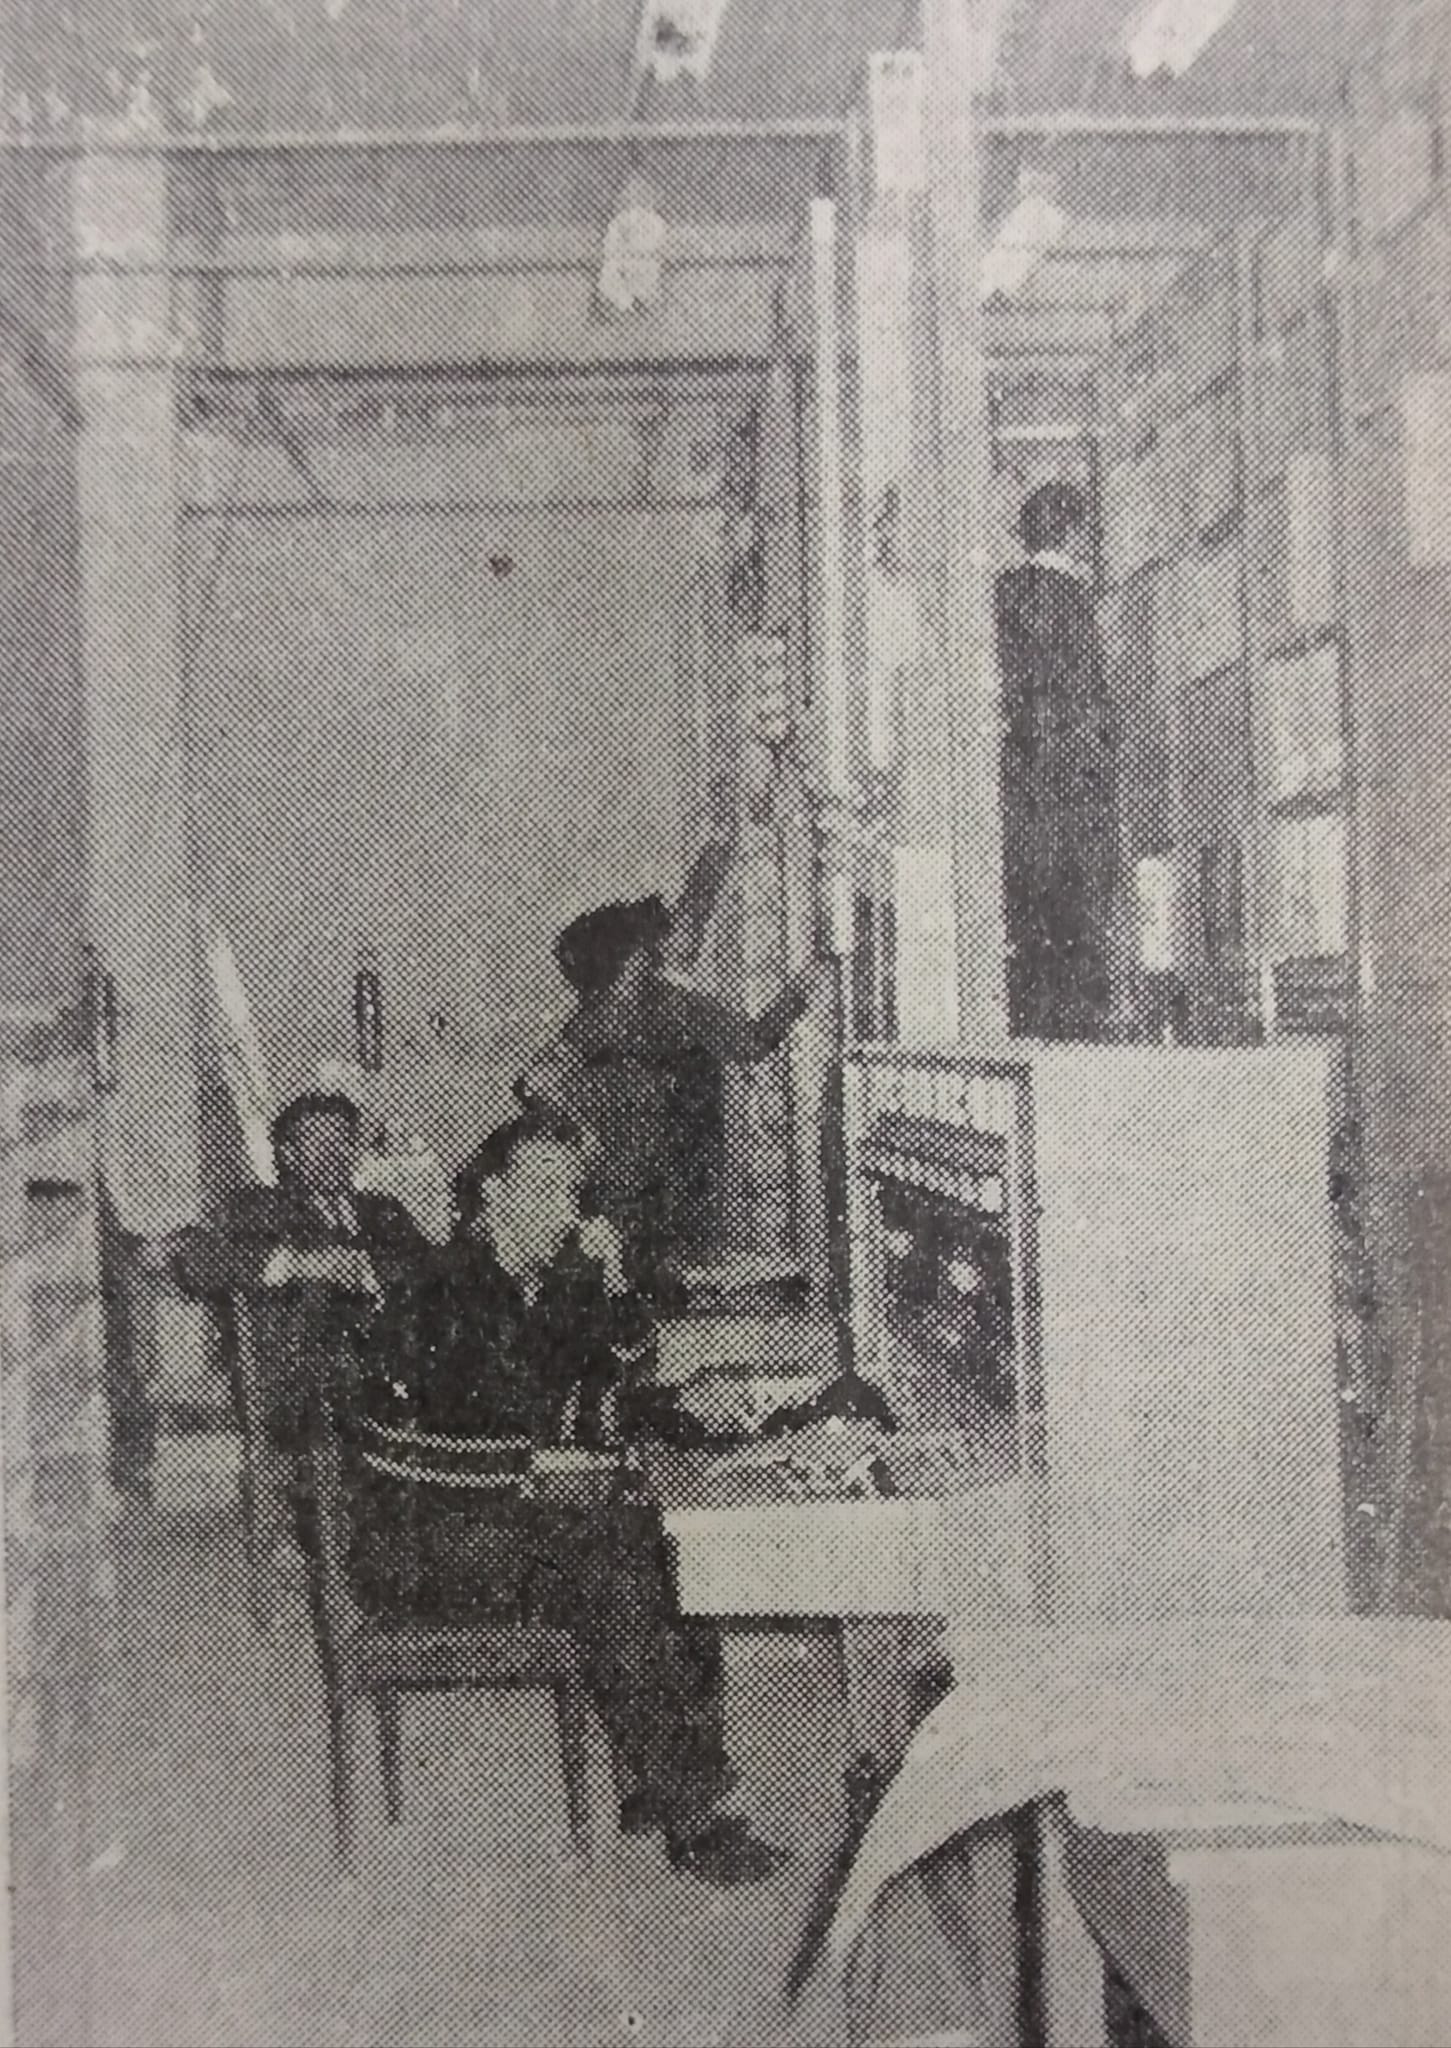 1965: Inauguran moderna central telefónica en Punta Arenas | Historia y Memoria